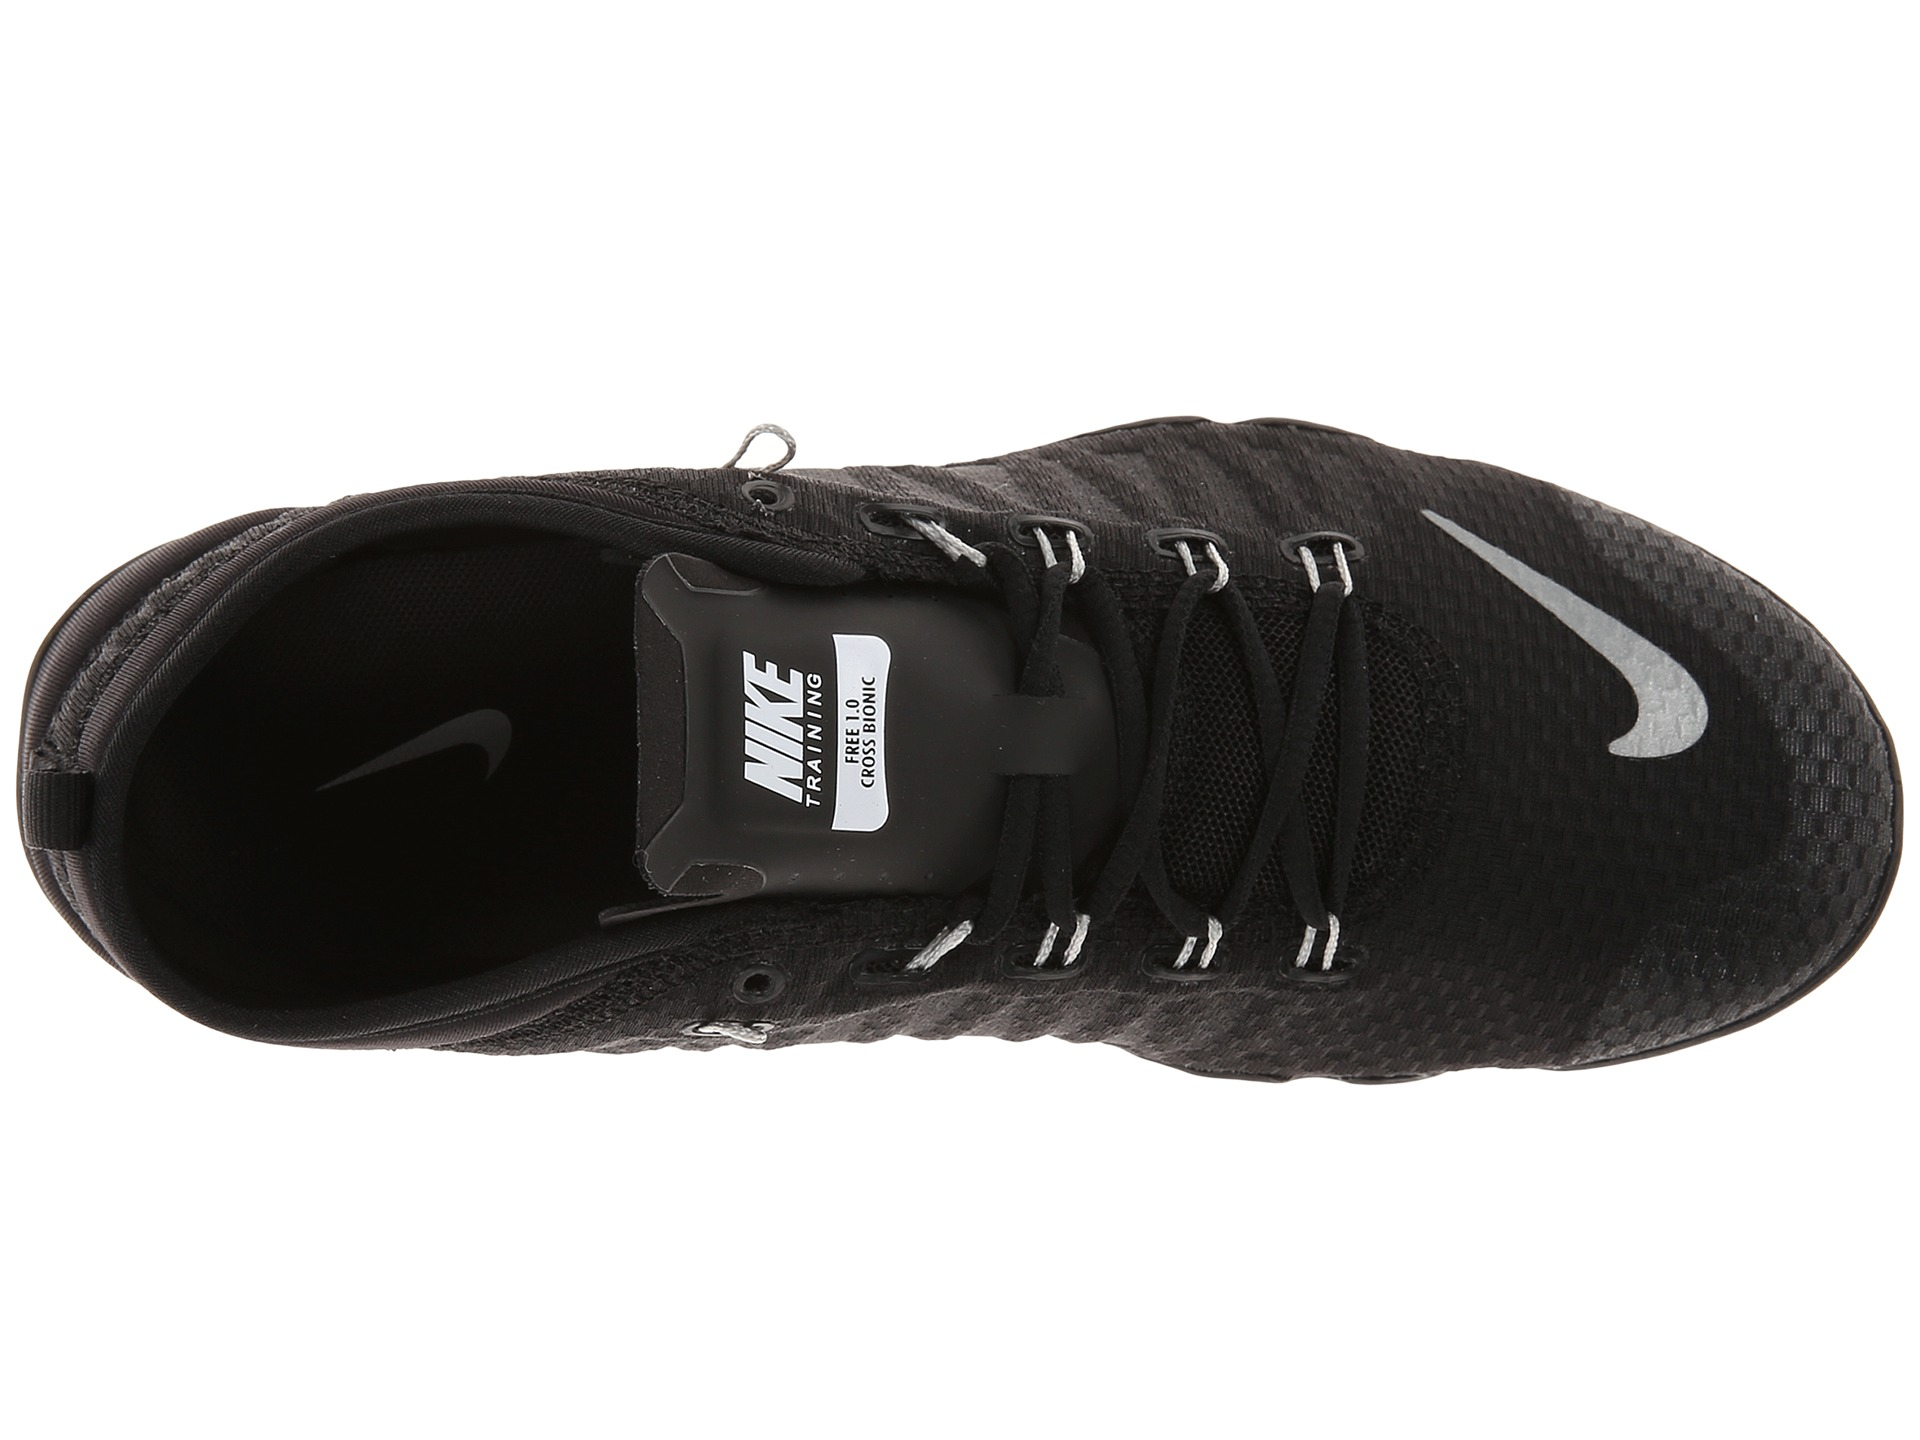 Nike Free 1.0 Cross Bionic in Black for Men - Lyst